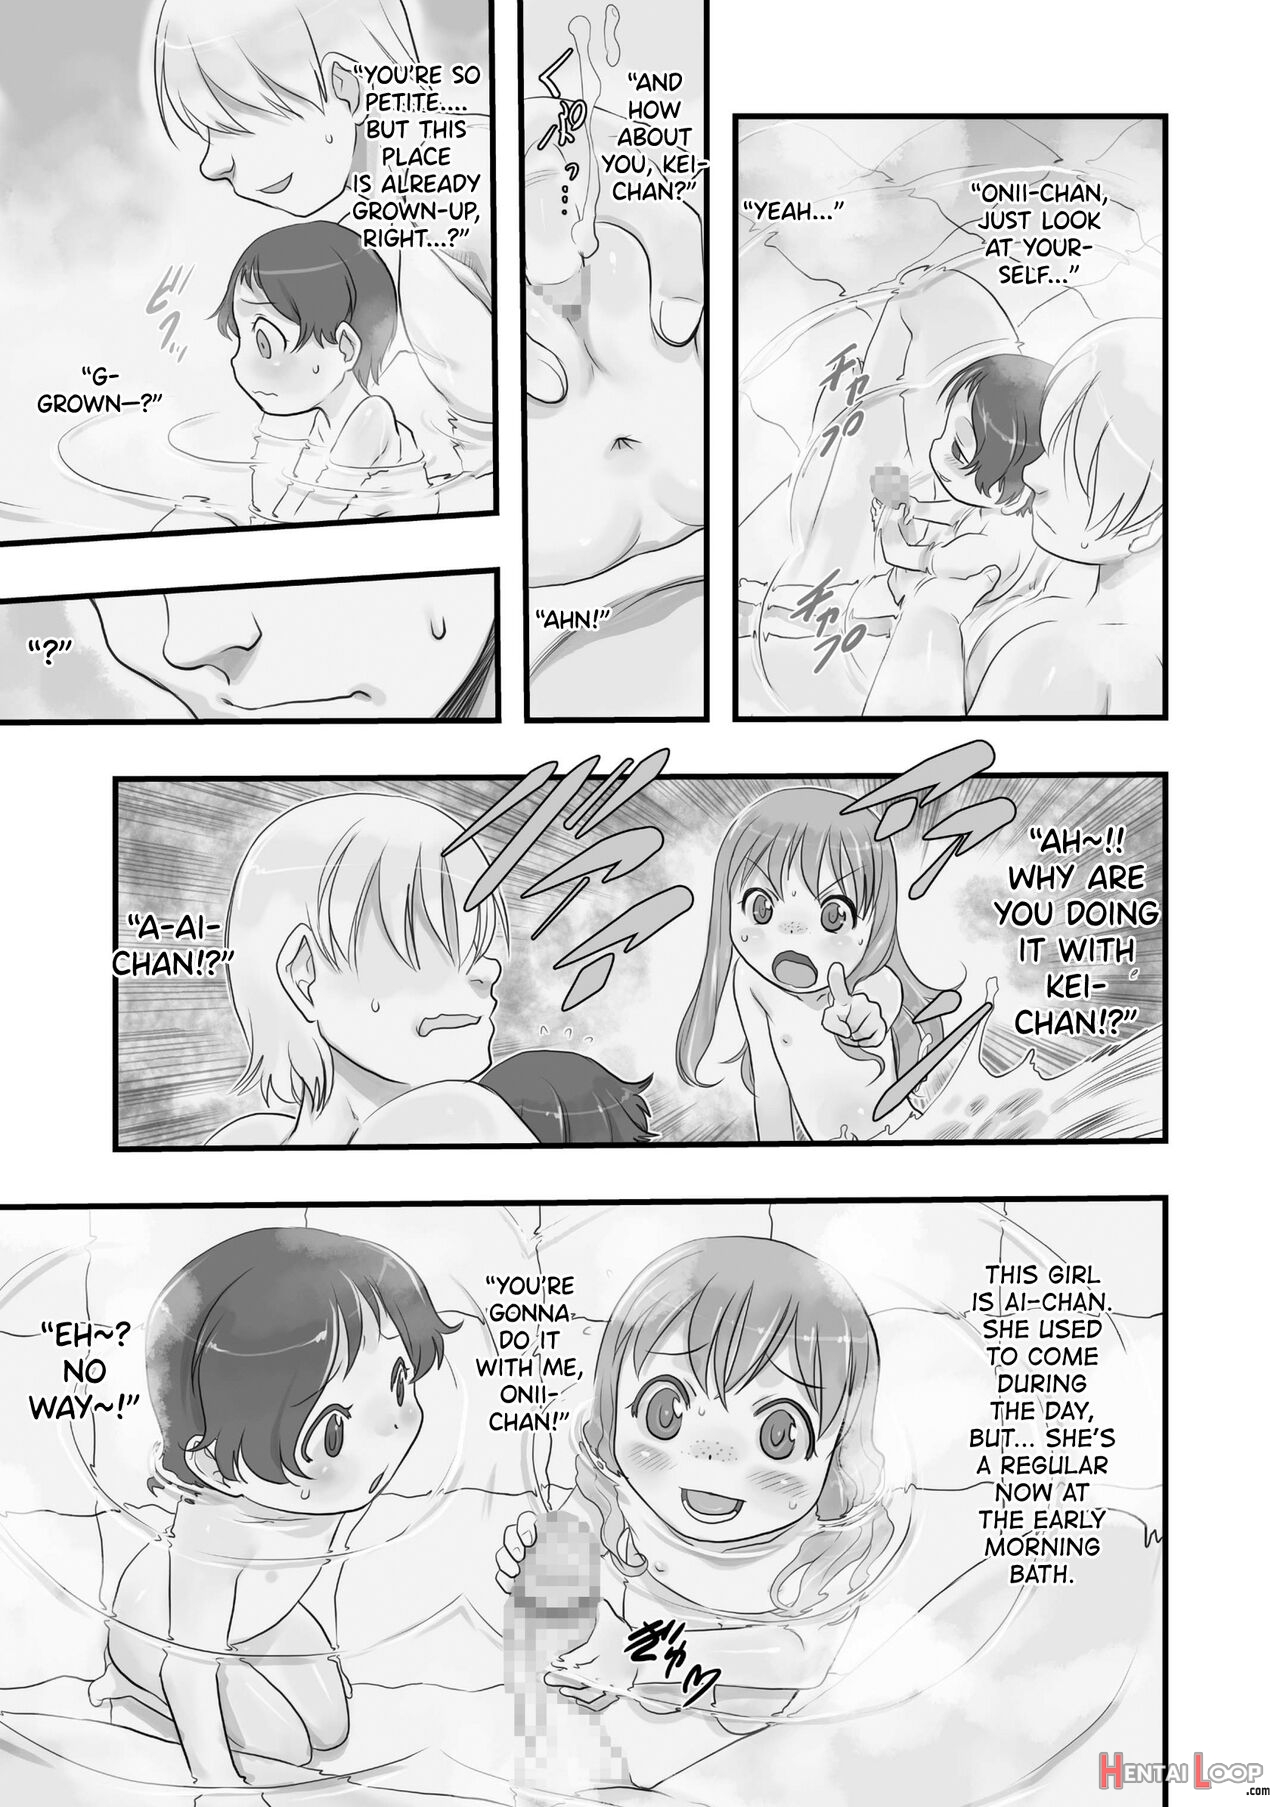 Ichiban Sentou ~yonbanme~ page 7